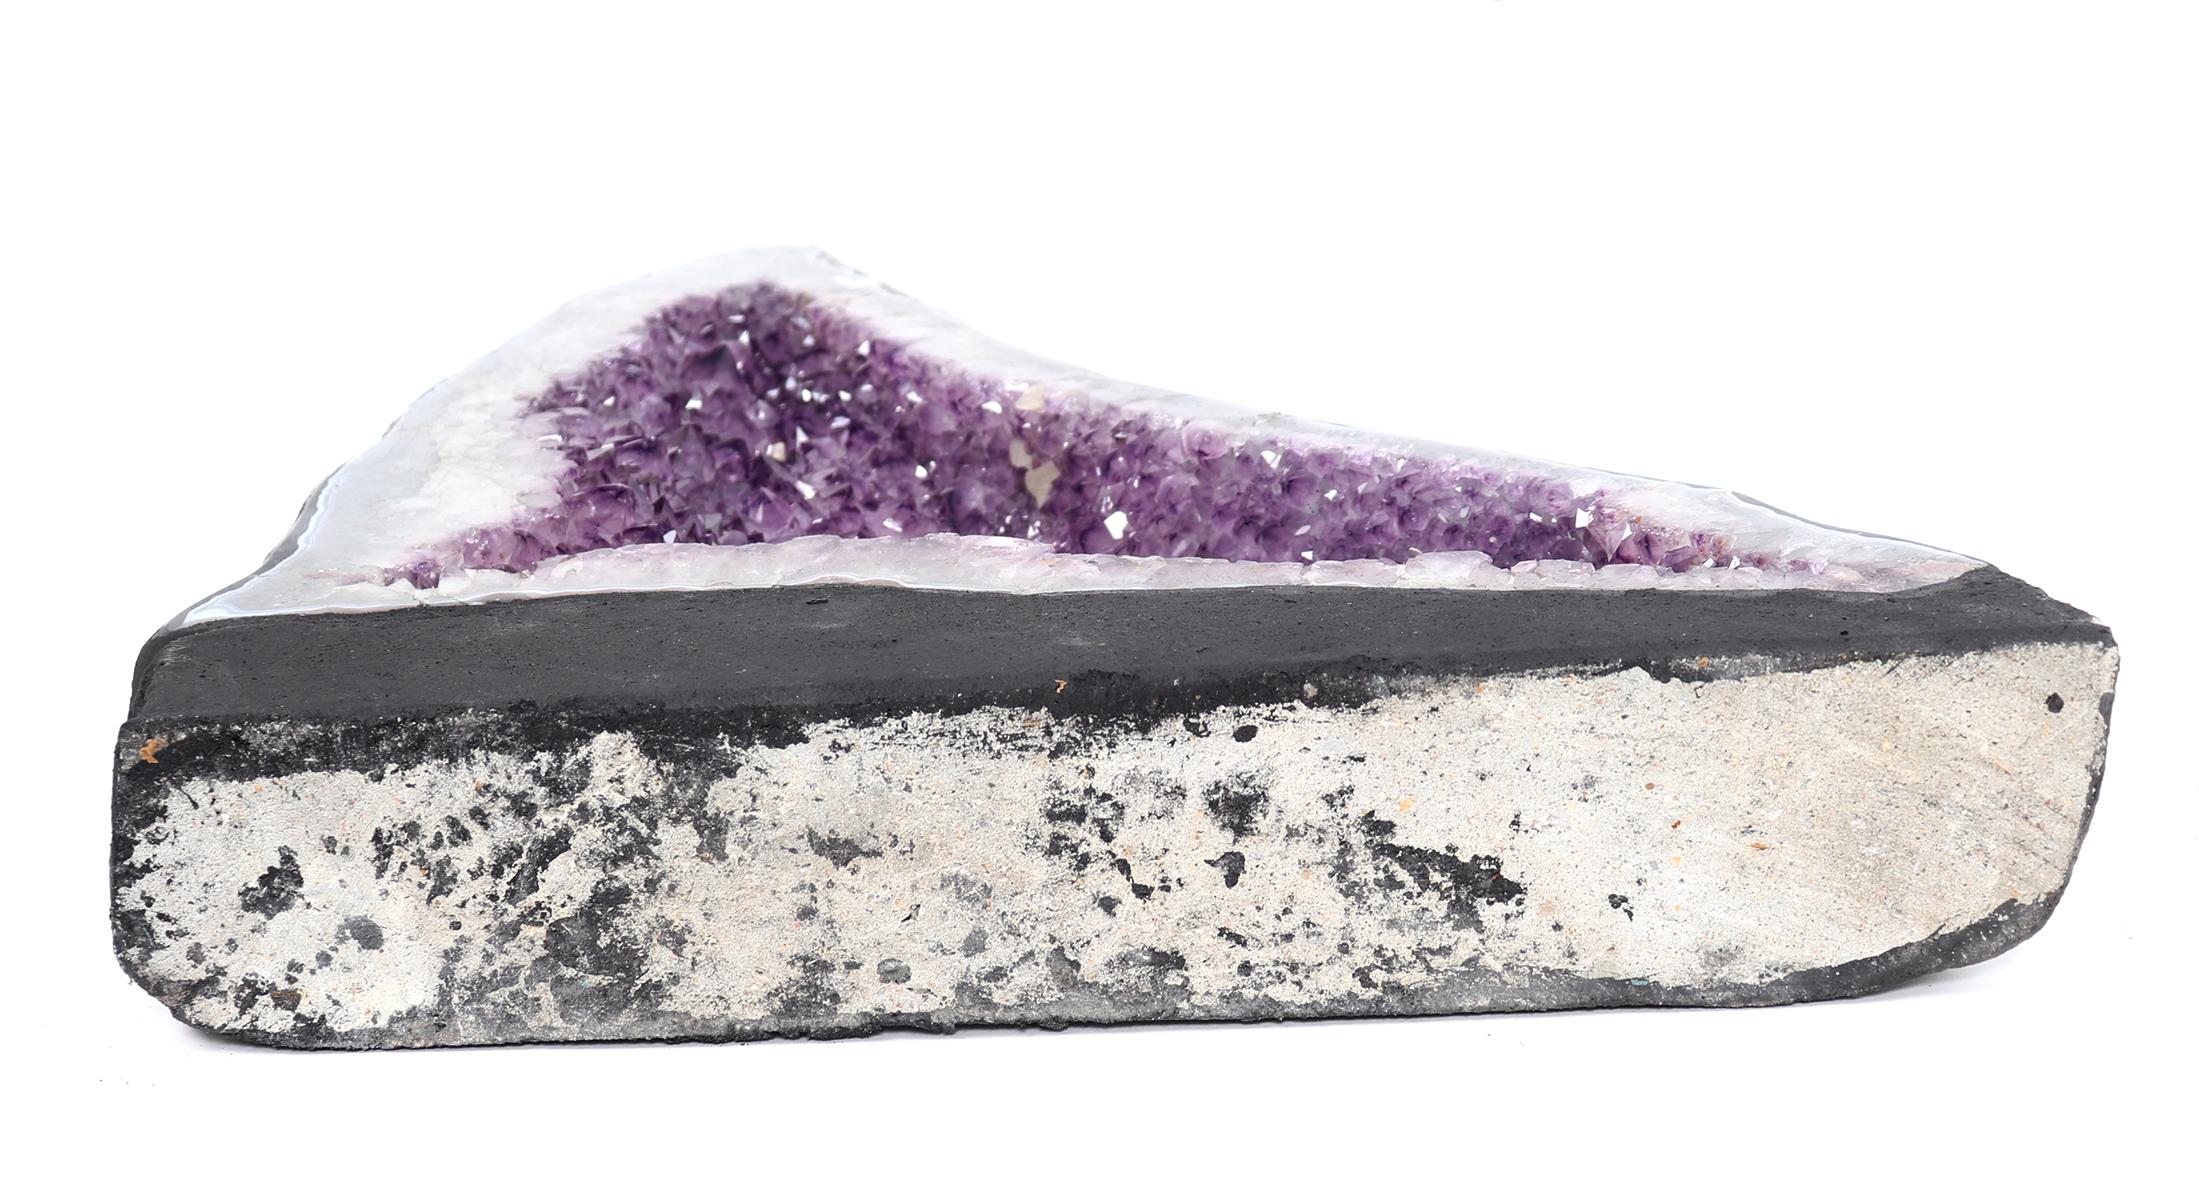 Stunning Shark Fin Amethyst Geode Cluster